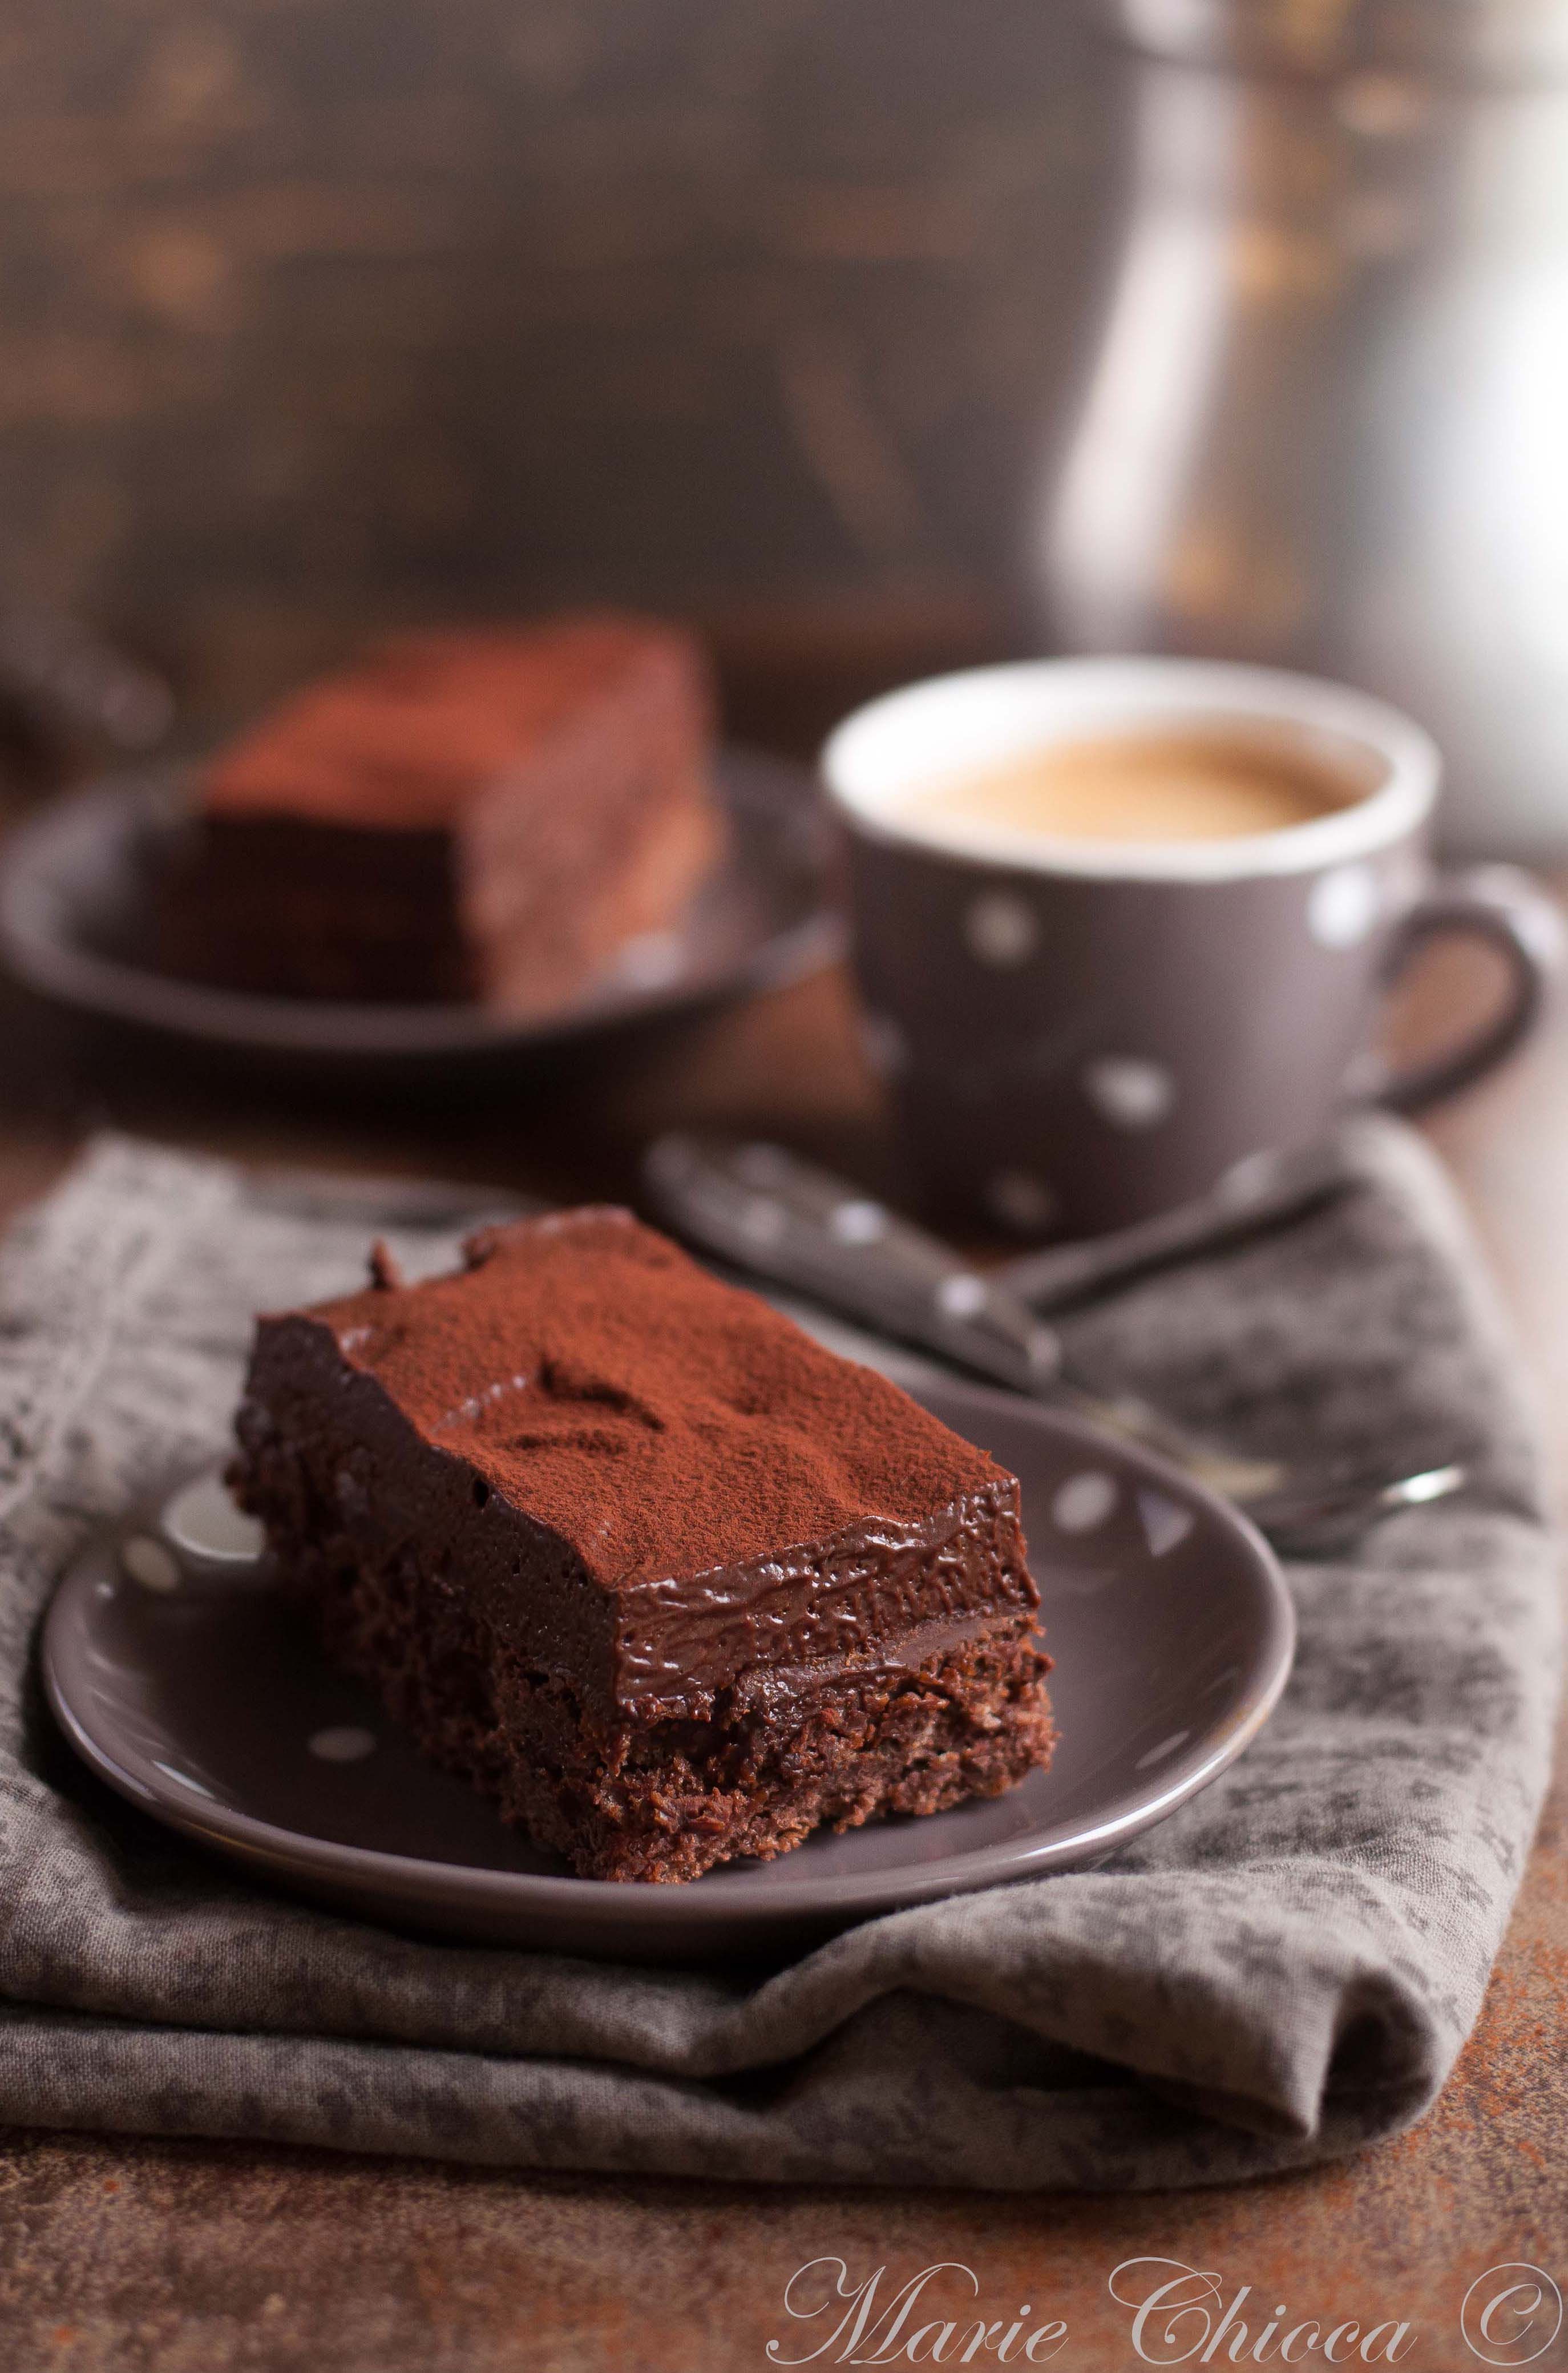 Кофе с шоколадом — необычные рецепты вкусного напитка